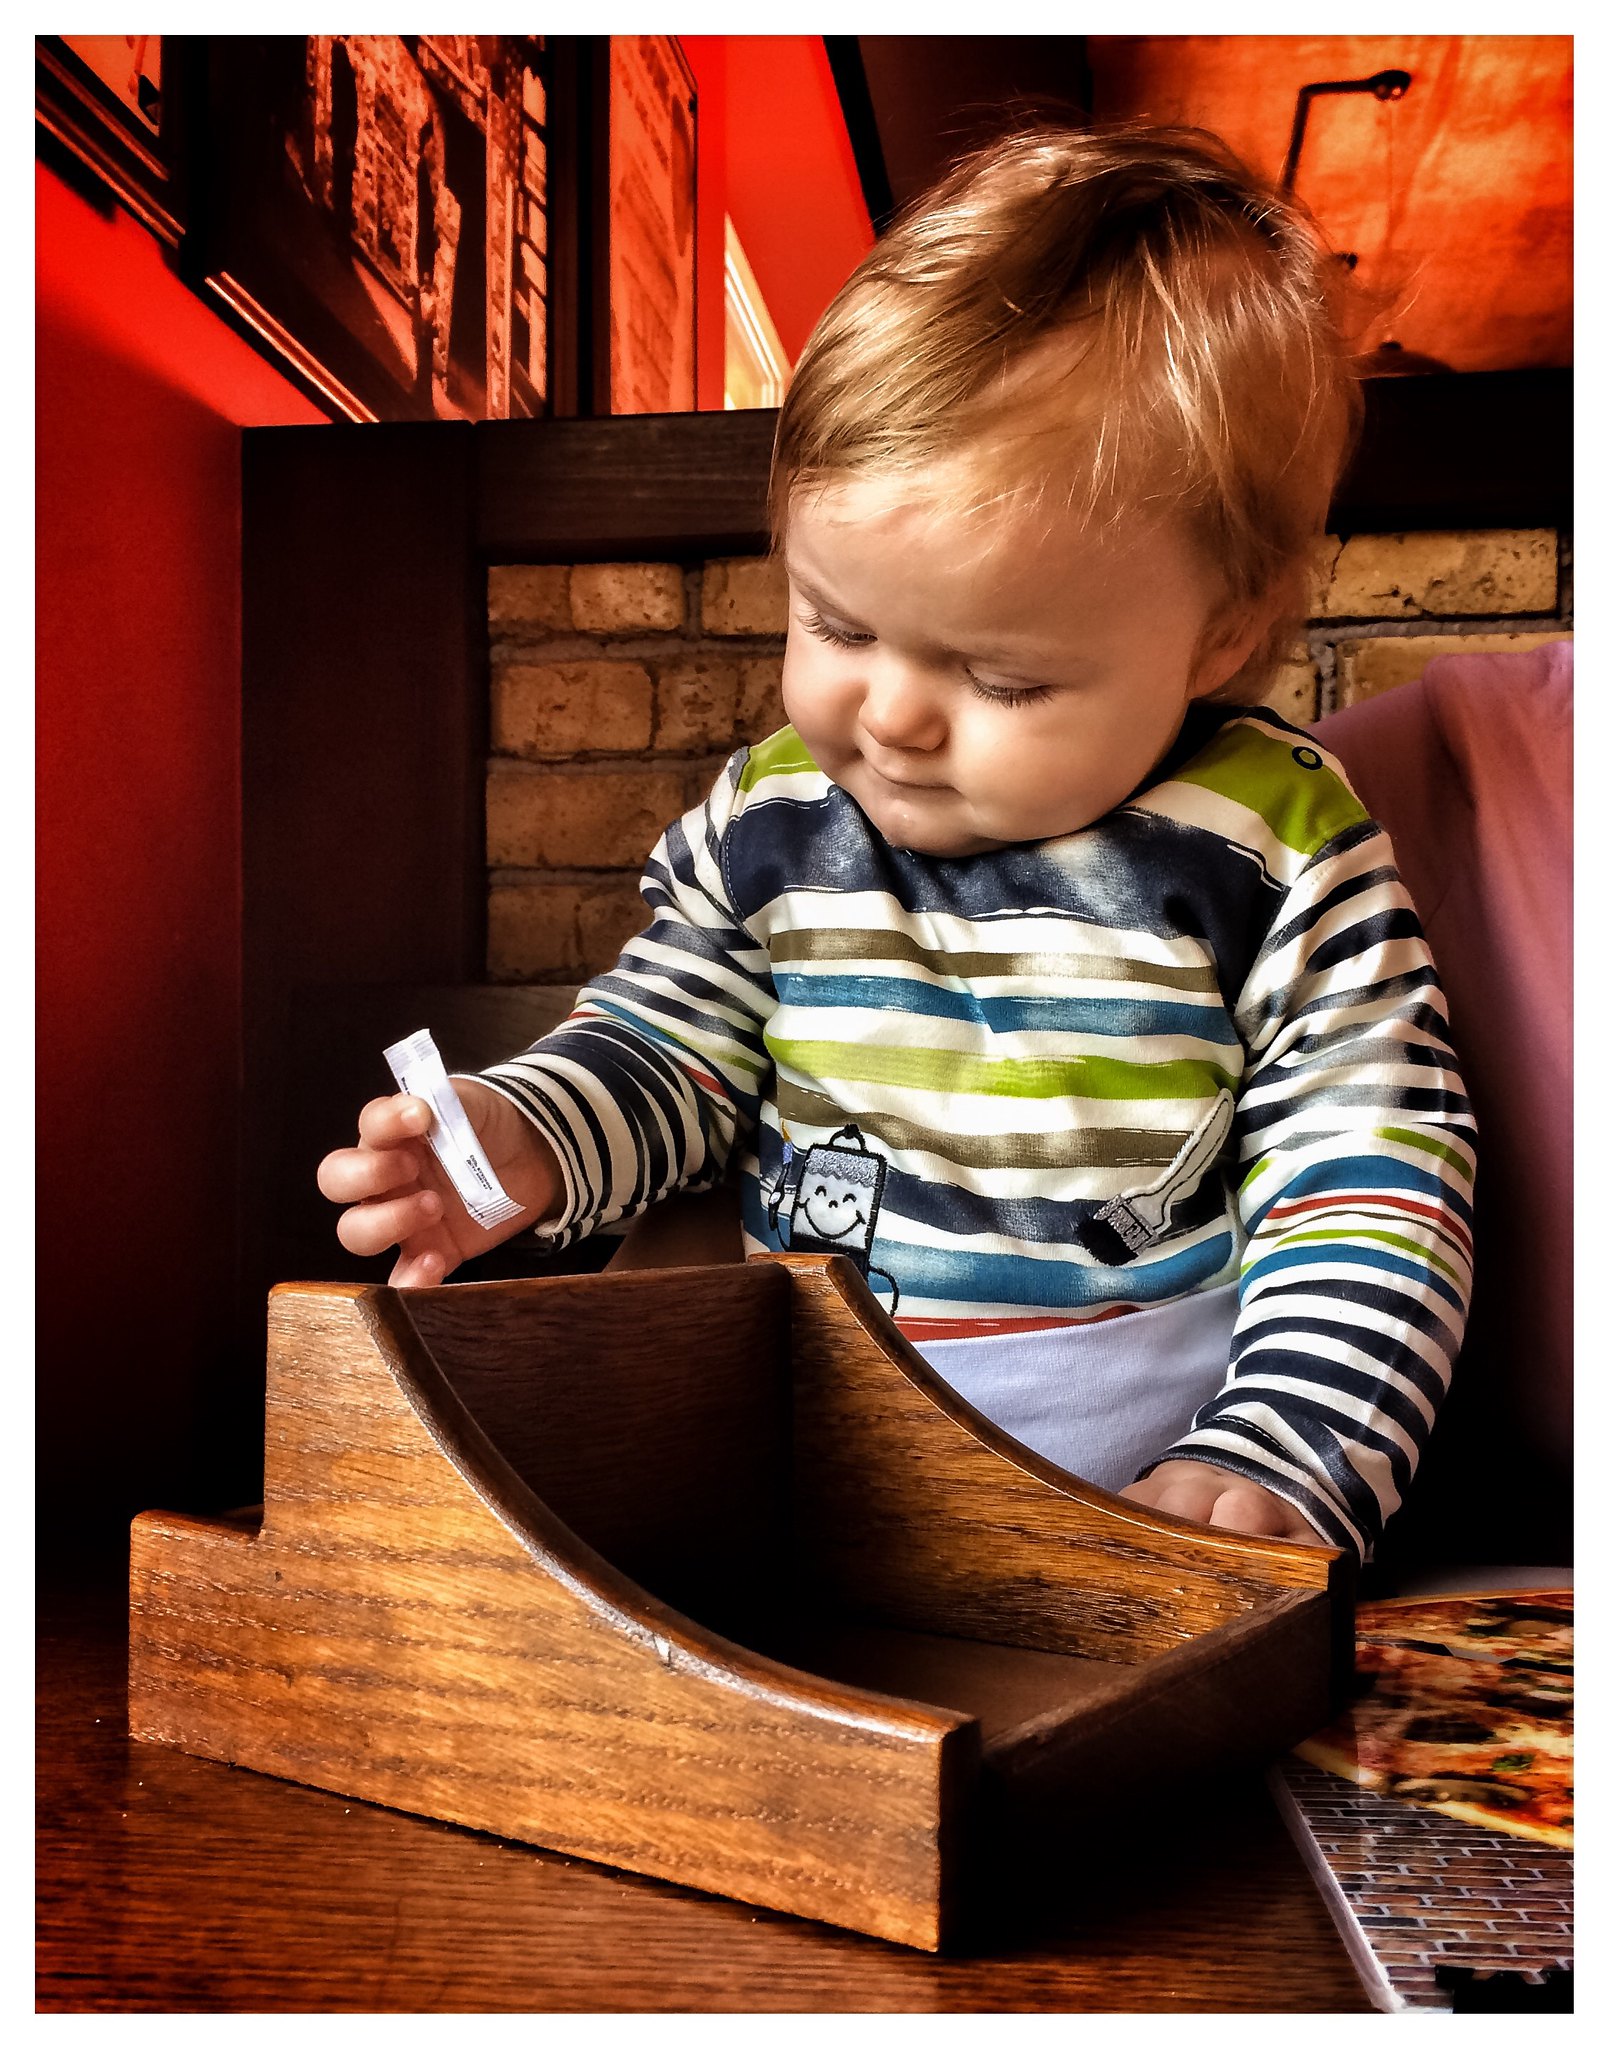 Un petit garçon qui joue avec un sachet de sucre dans un restaurant | Source : Flickr